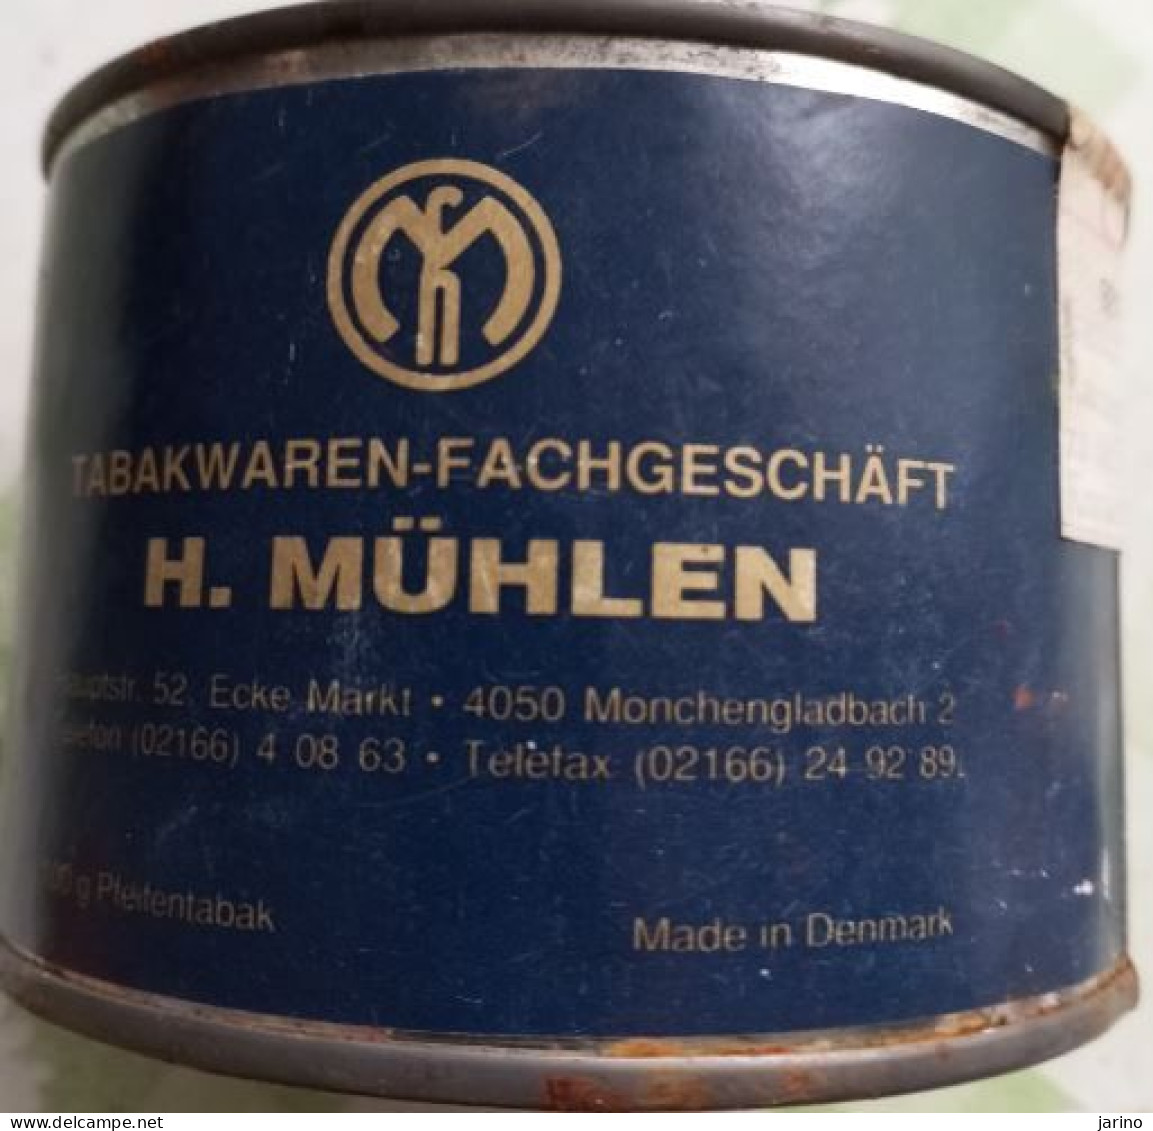 Ancient Empty Metal Tobacco Box Tabakwaren-Fachgeschäft H. MüHLEN, Made In Denmark, Average 10 Cm - Empty Tobacco Boxes